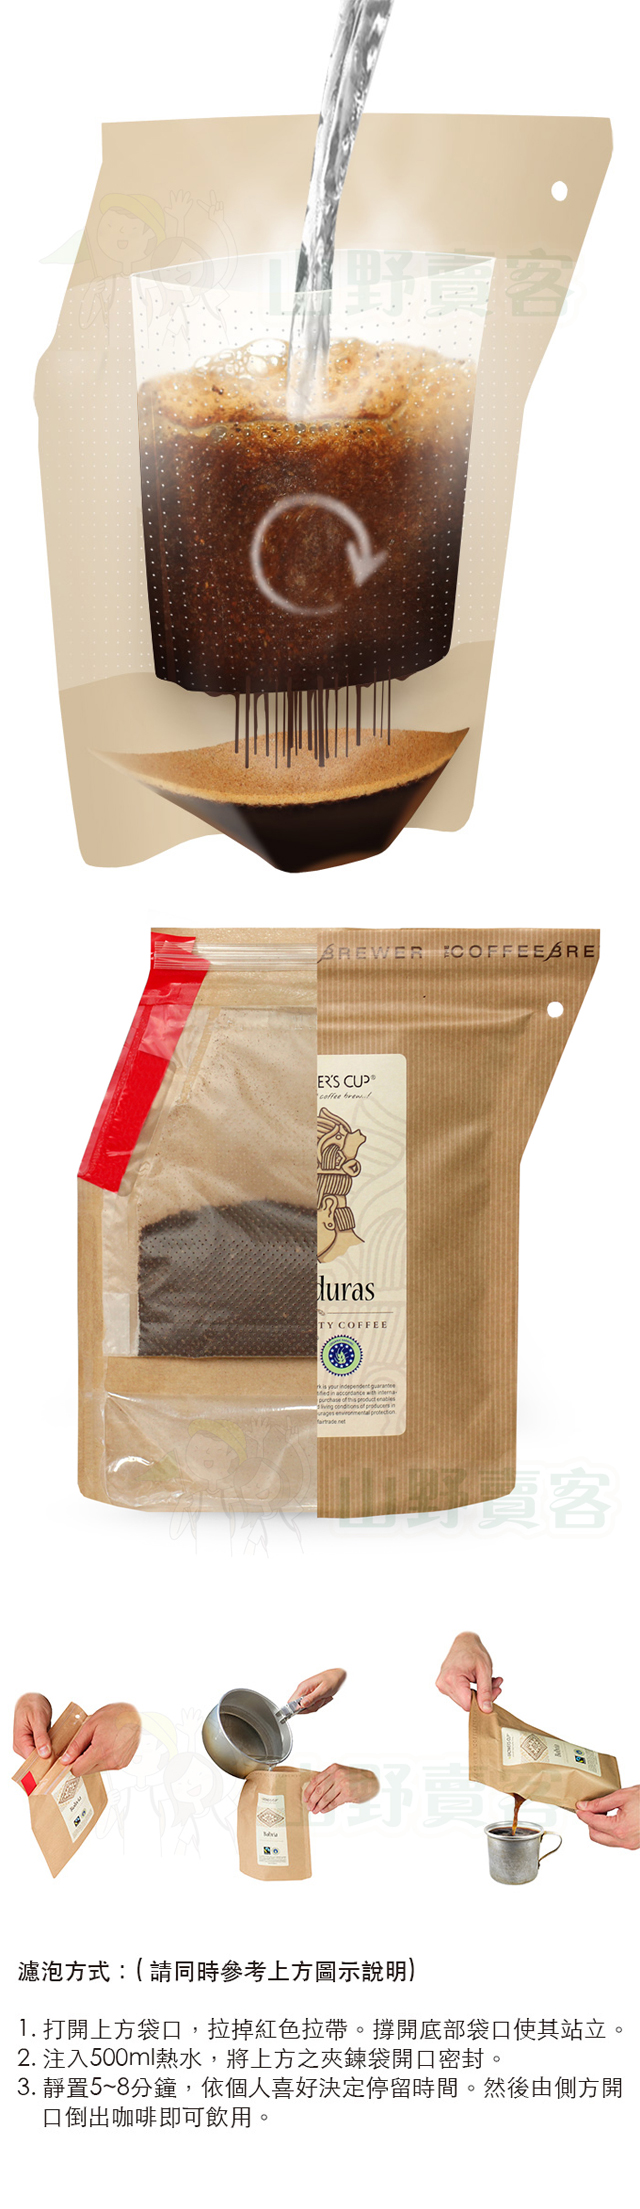 丹麥 Grower’s Cup 頂級有機攜帶式濾泡咖啡-禮盒組(含手持架) 研磨咖啡粉 GR05